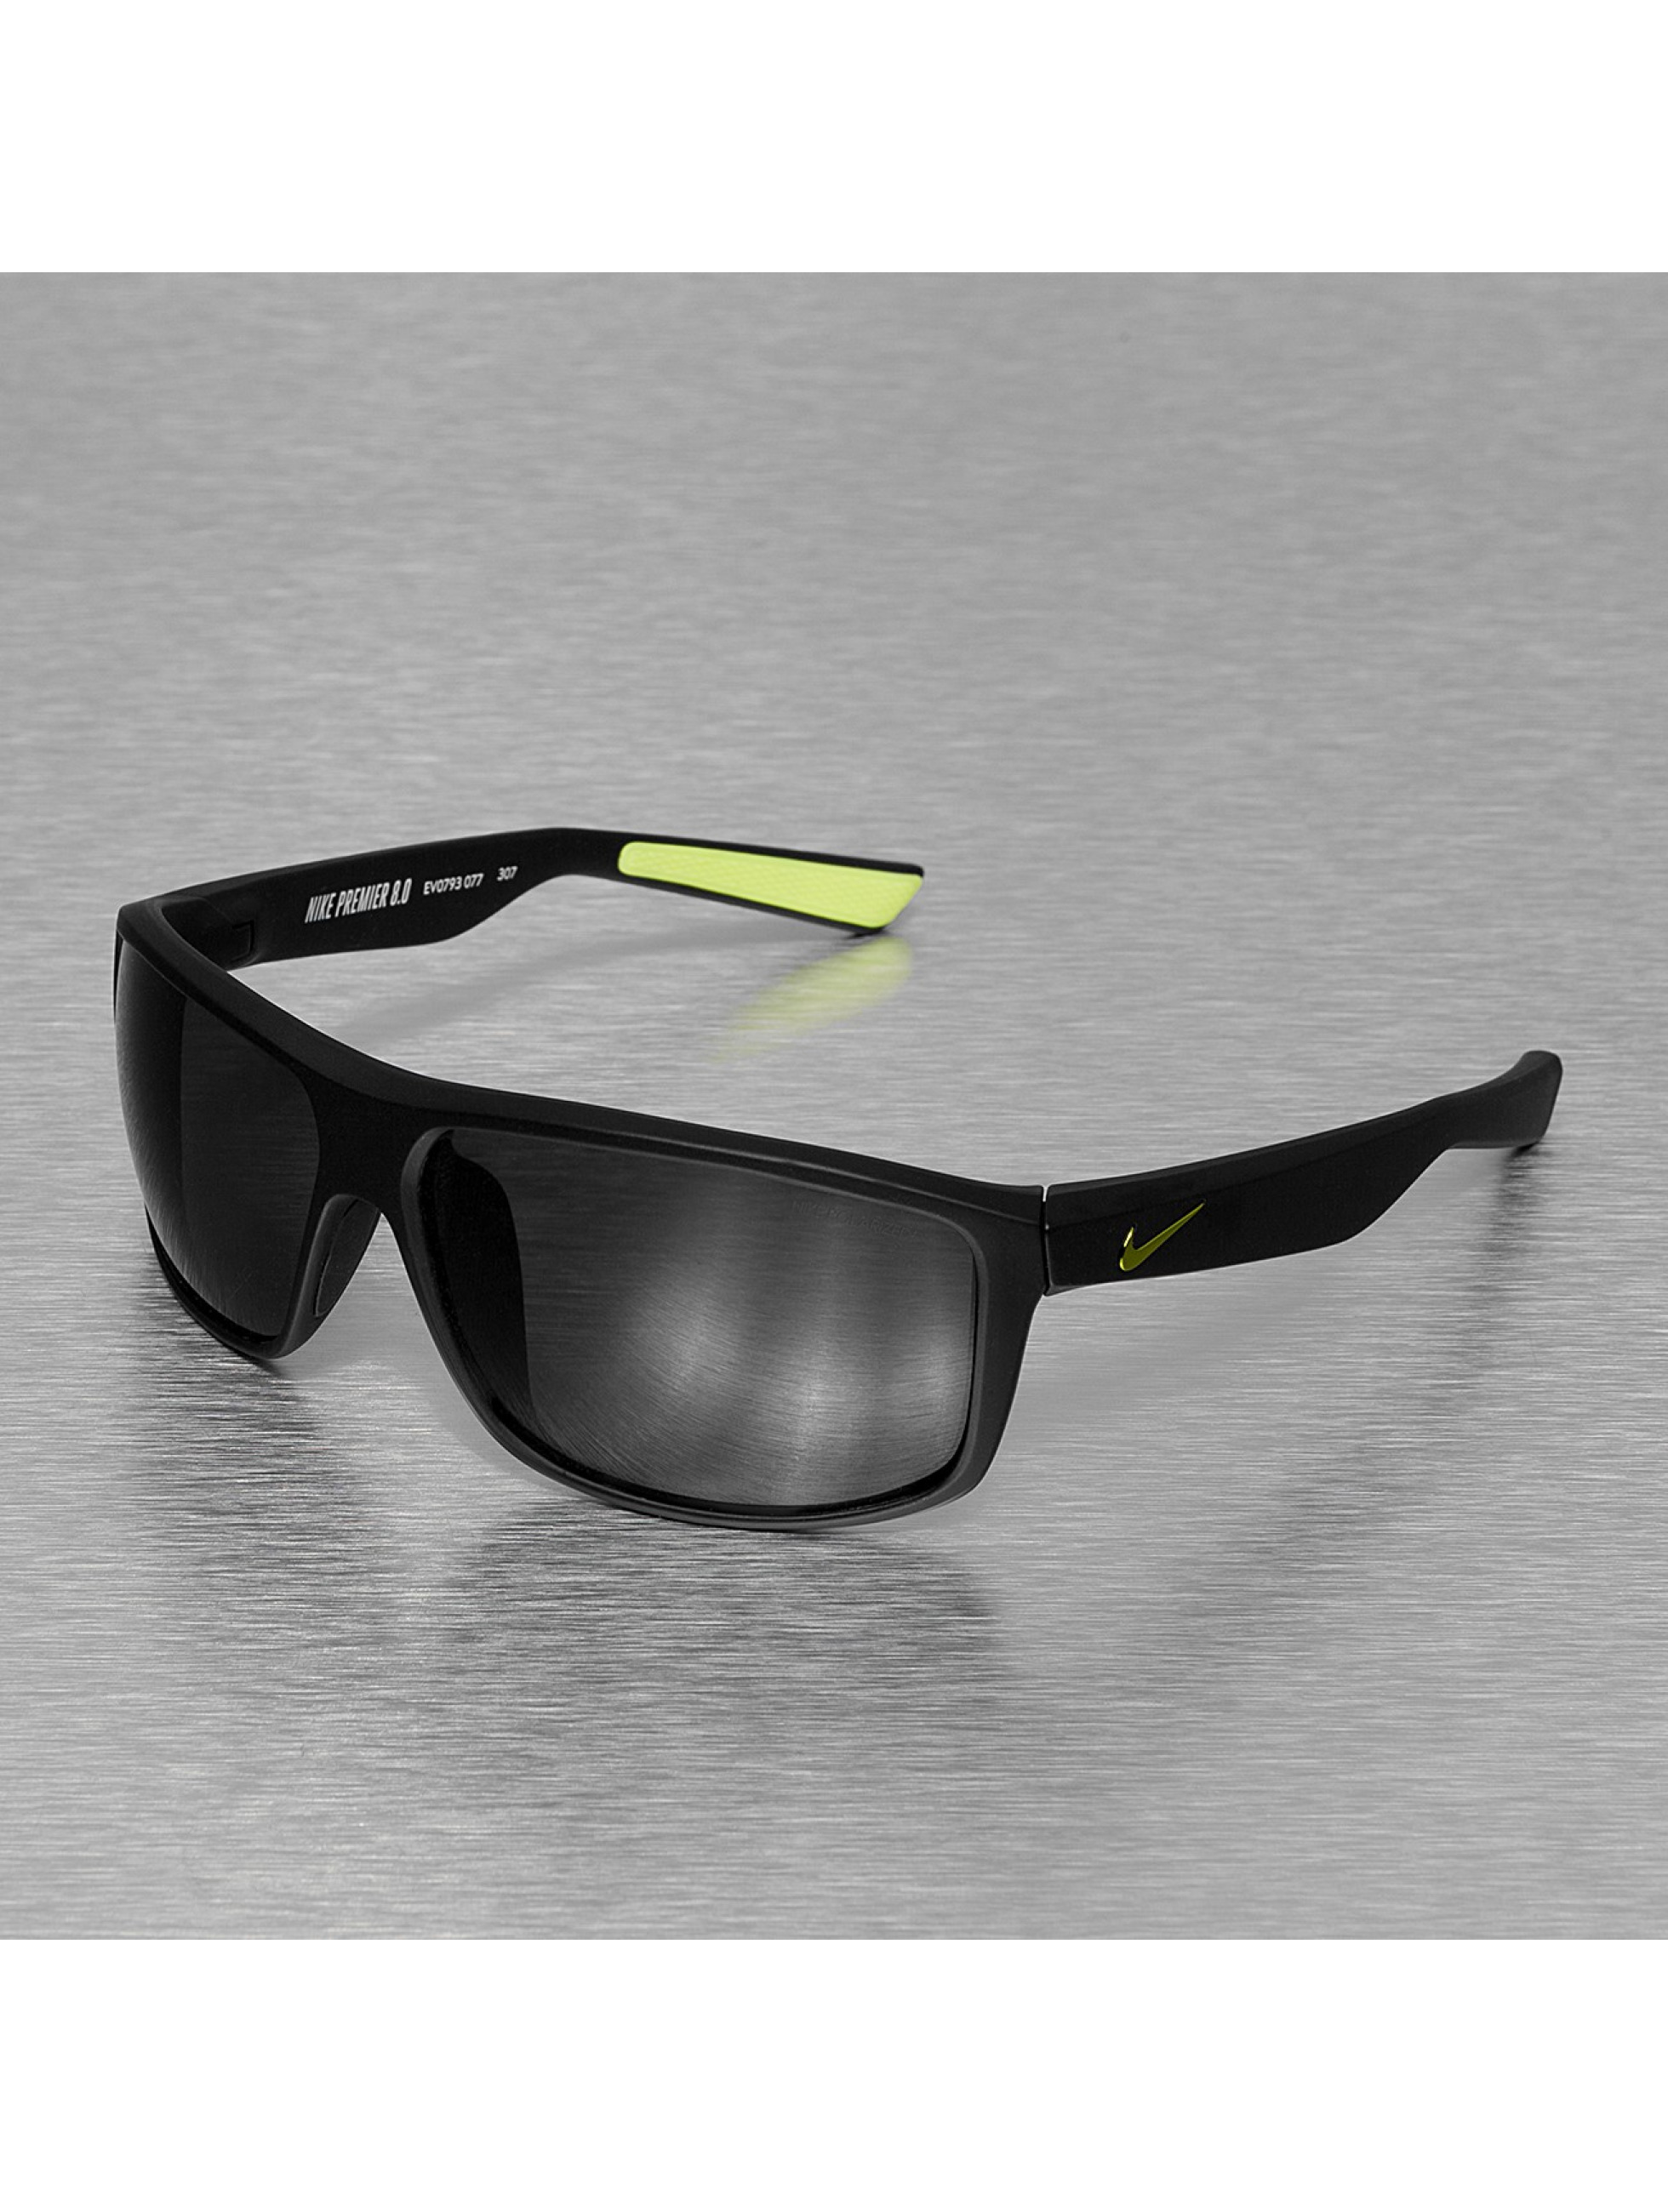 Sonnenbrille Premier 8.0 Polarized in schwarz